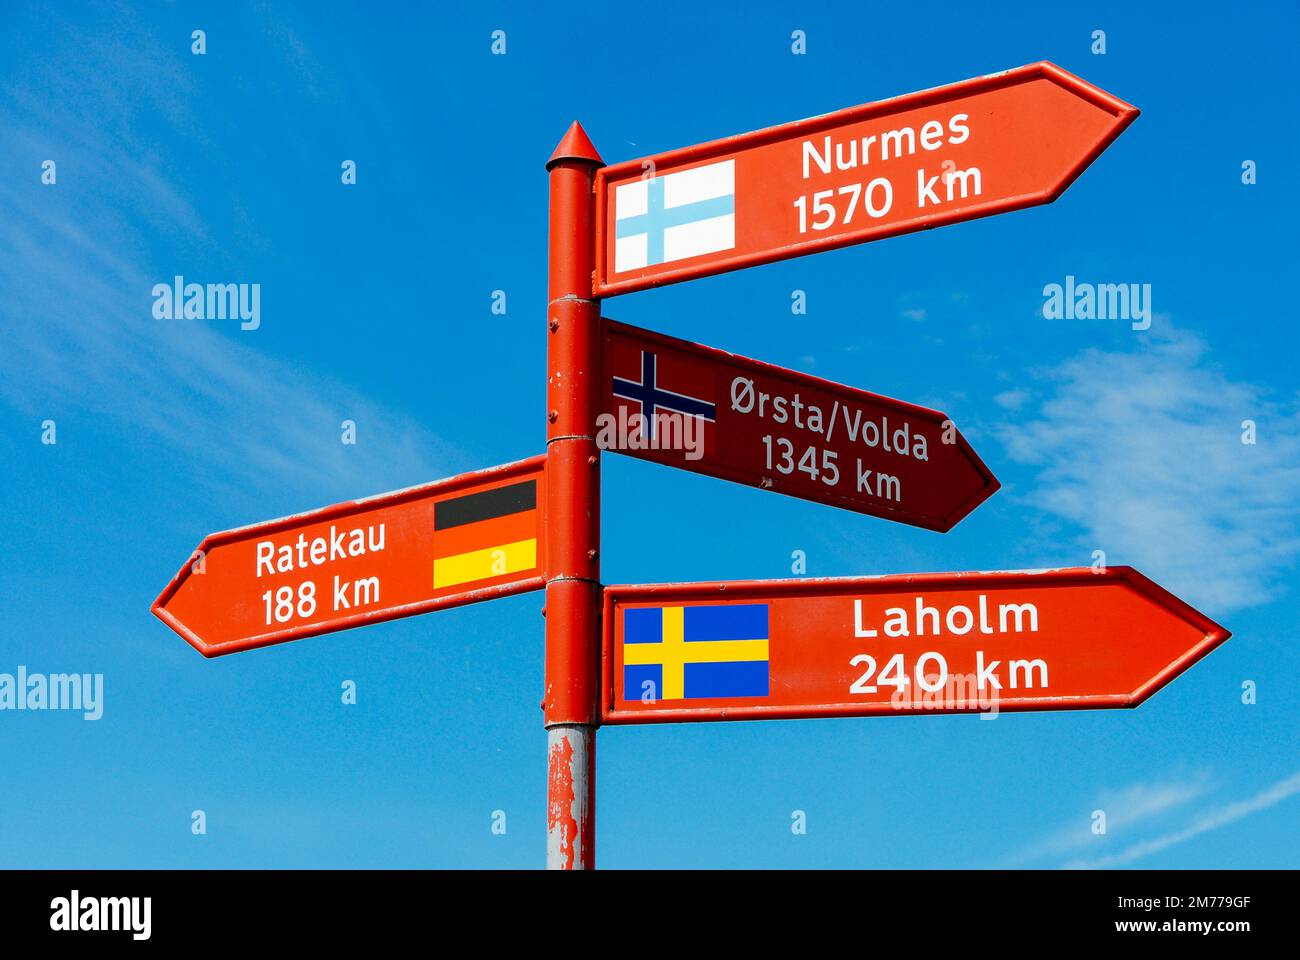 Panneau indiquant les directions et les distances dans la ville de Stege sur l'île de Møn au Danemark Banque D'Images